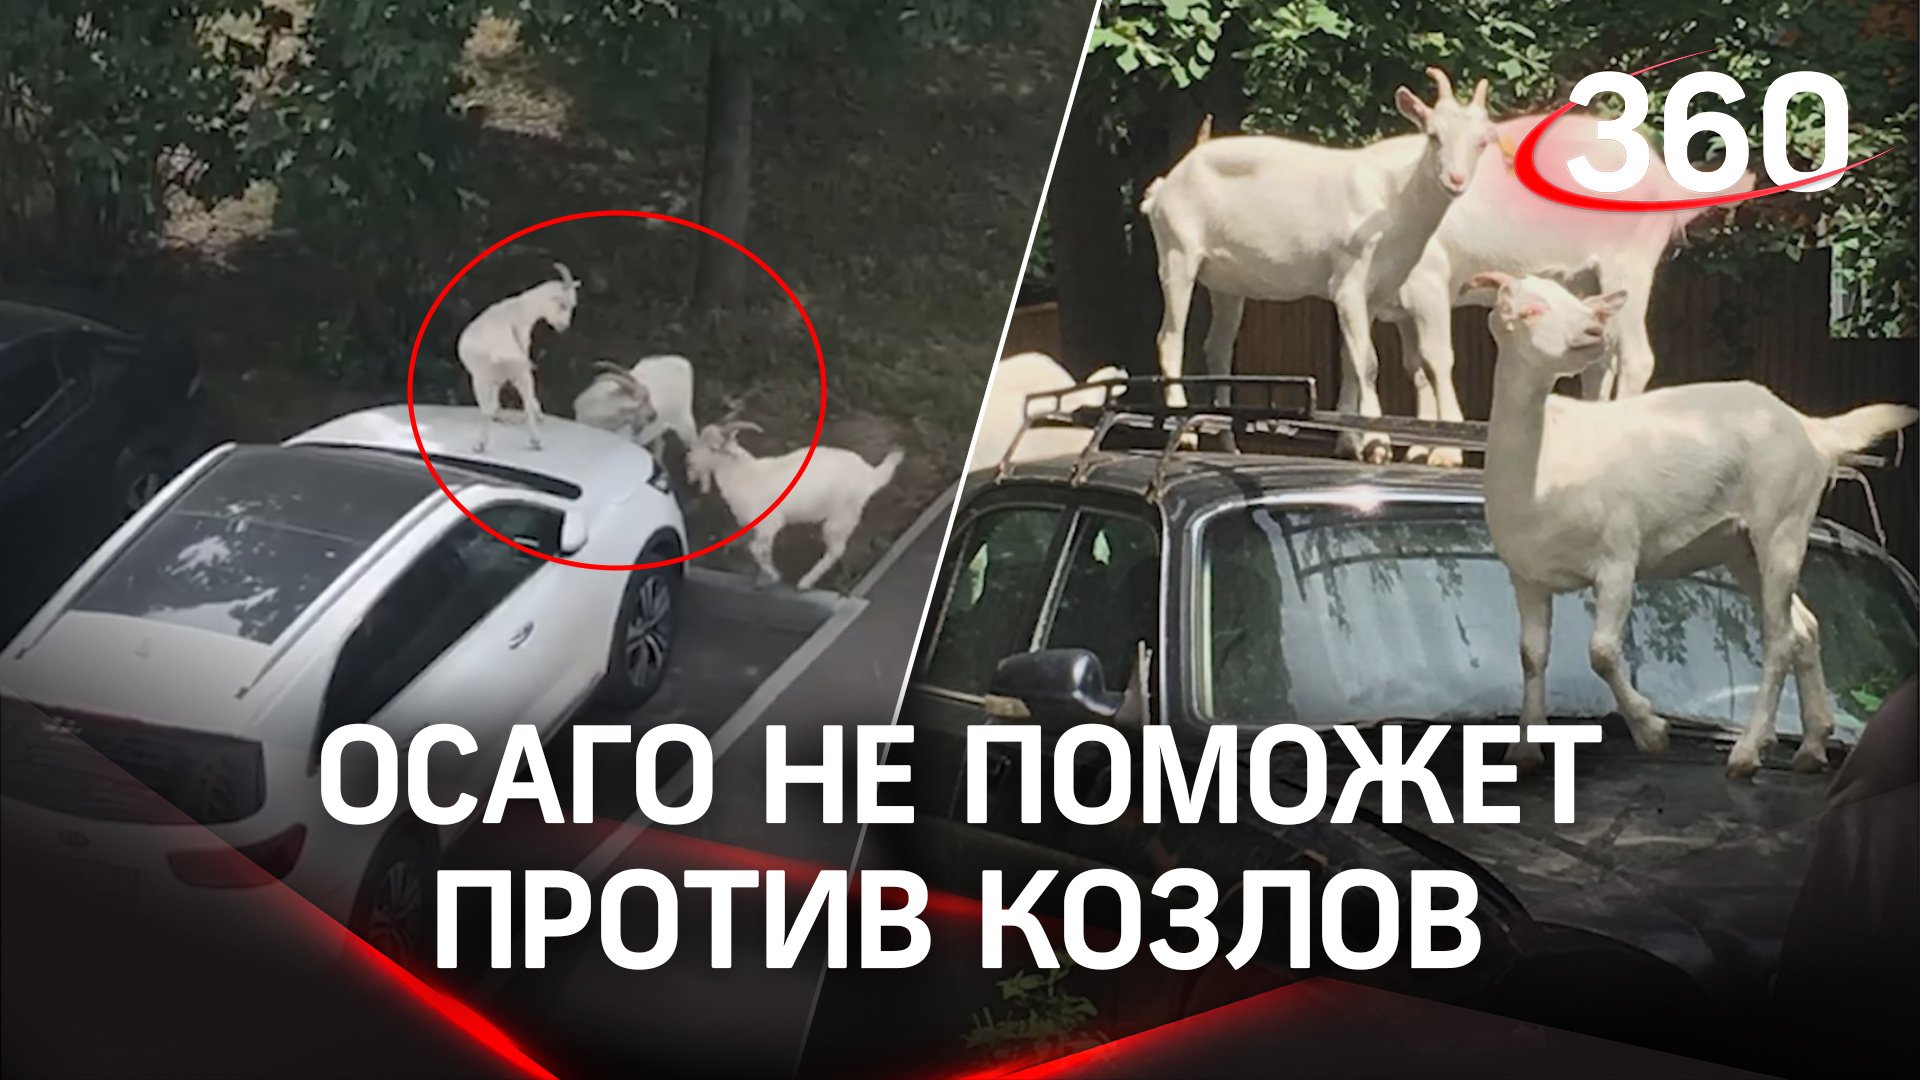 «Осаго не поможет против козлов» - В Южном Бутове парнокопытные бросаются на автомобили